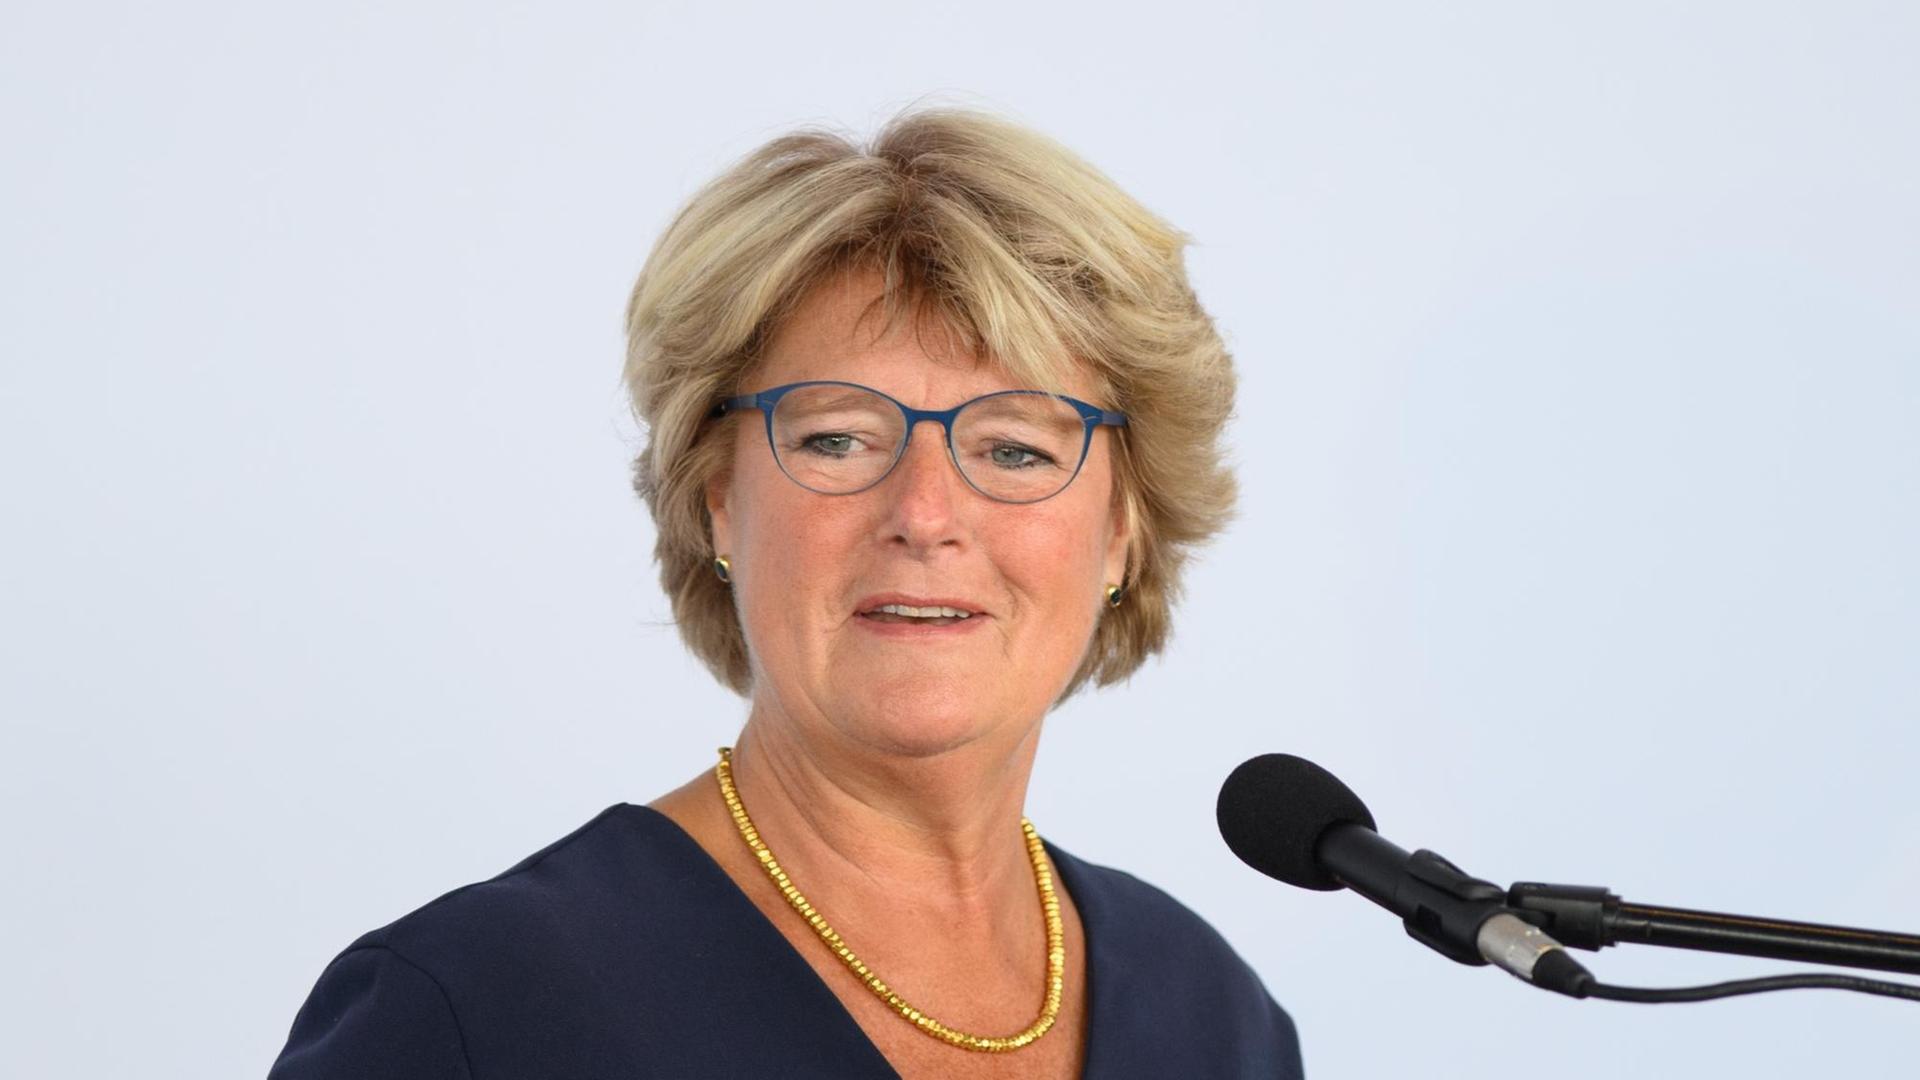 Kulturstaatsministerin Monika Grütters (CDU) am Mikrophon während einer Rede.